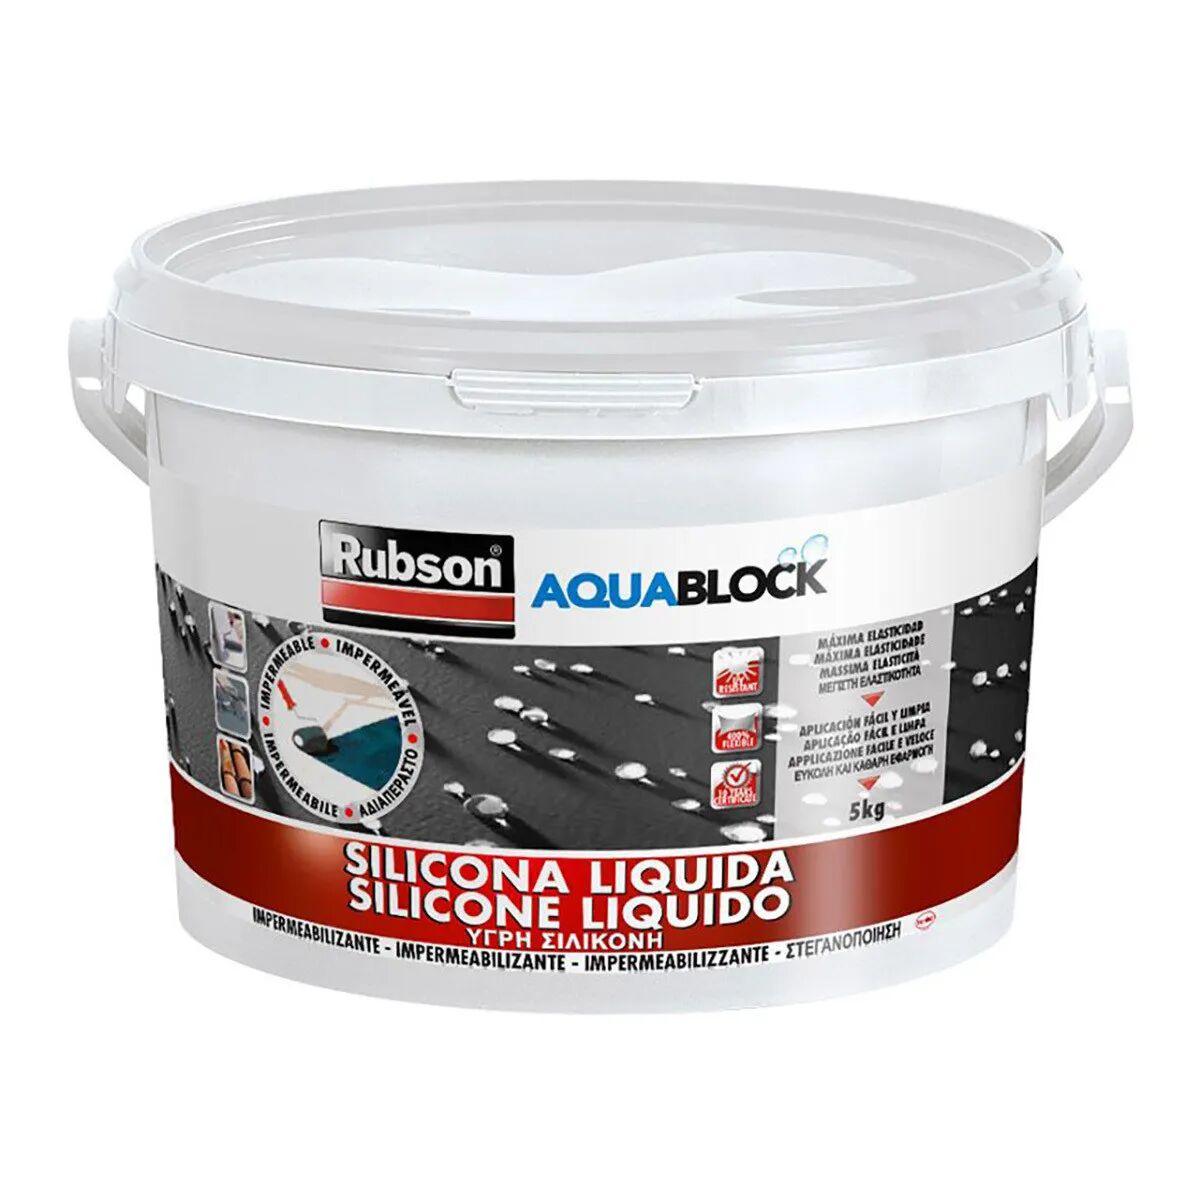 RUBSON Silicone Liquido  Aquablock 5 Kg Bianco Rivestimento Impermeabile Universale